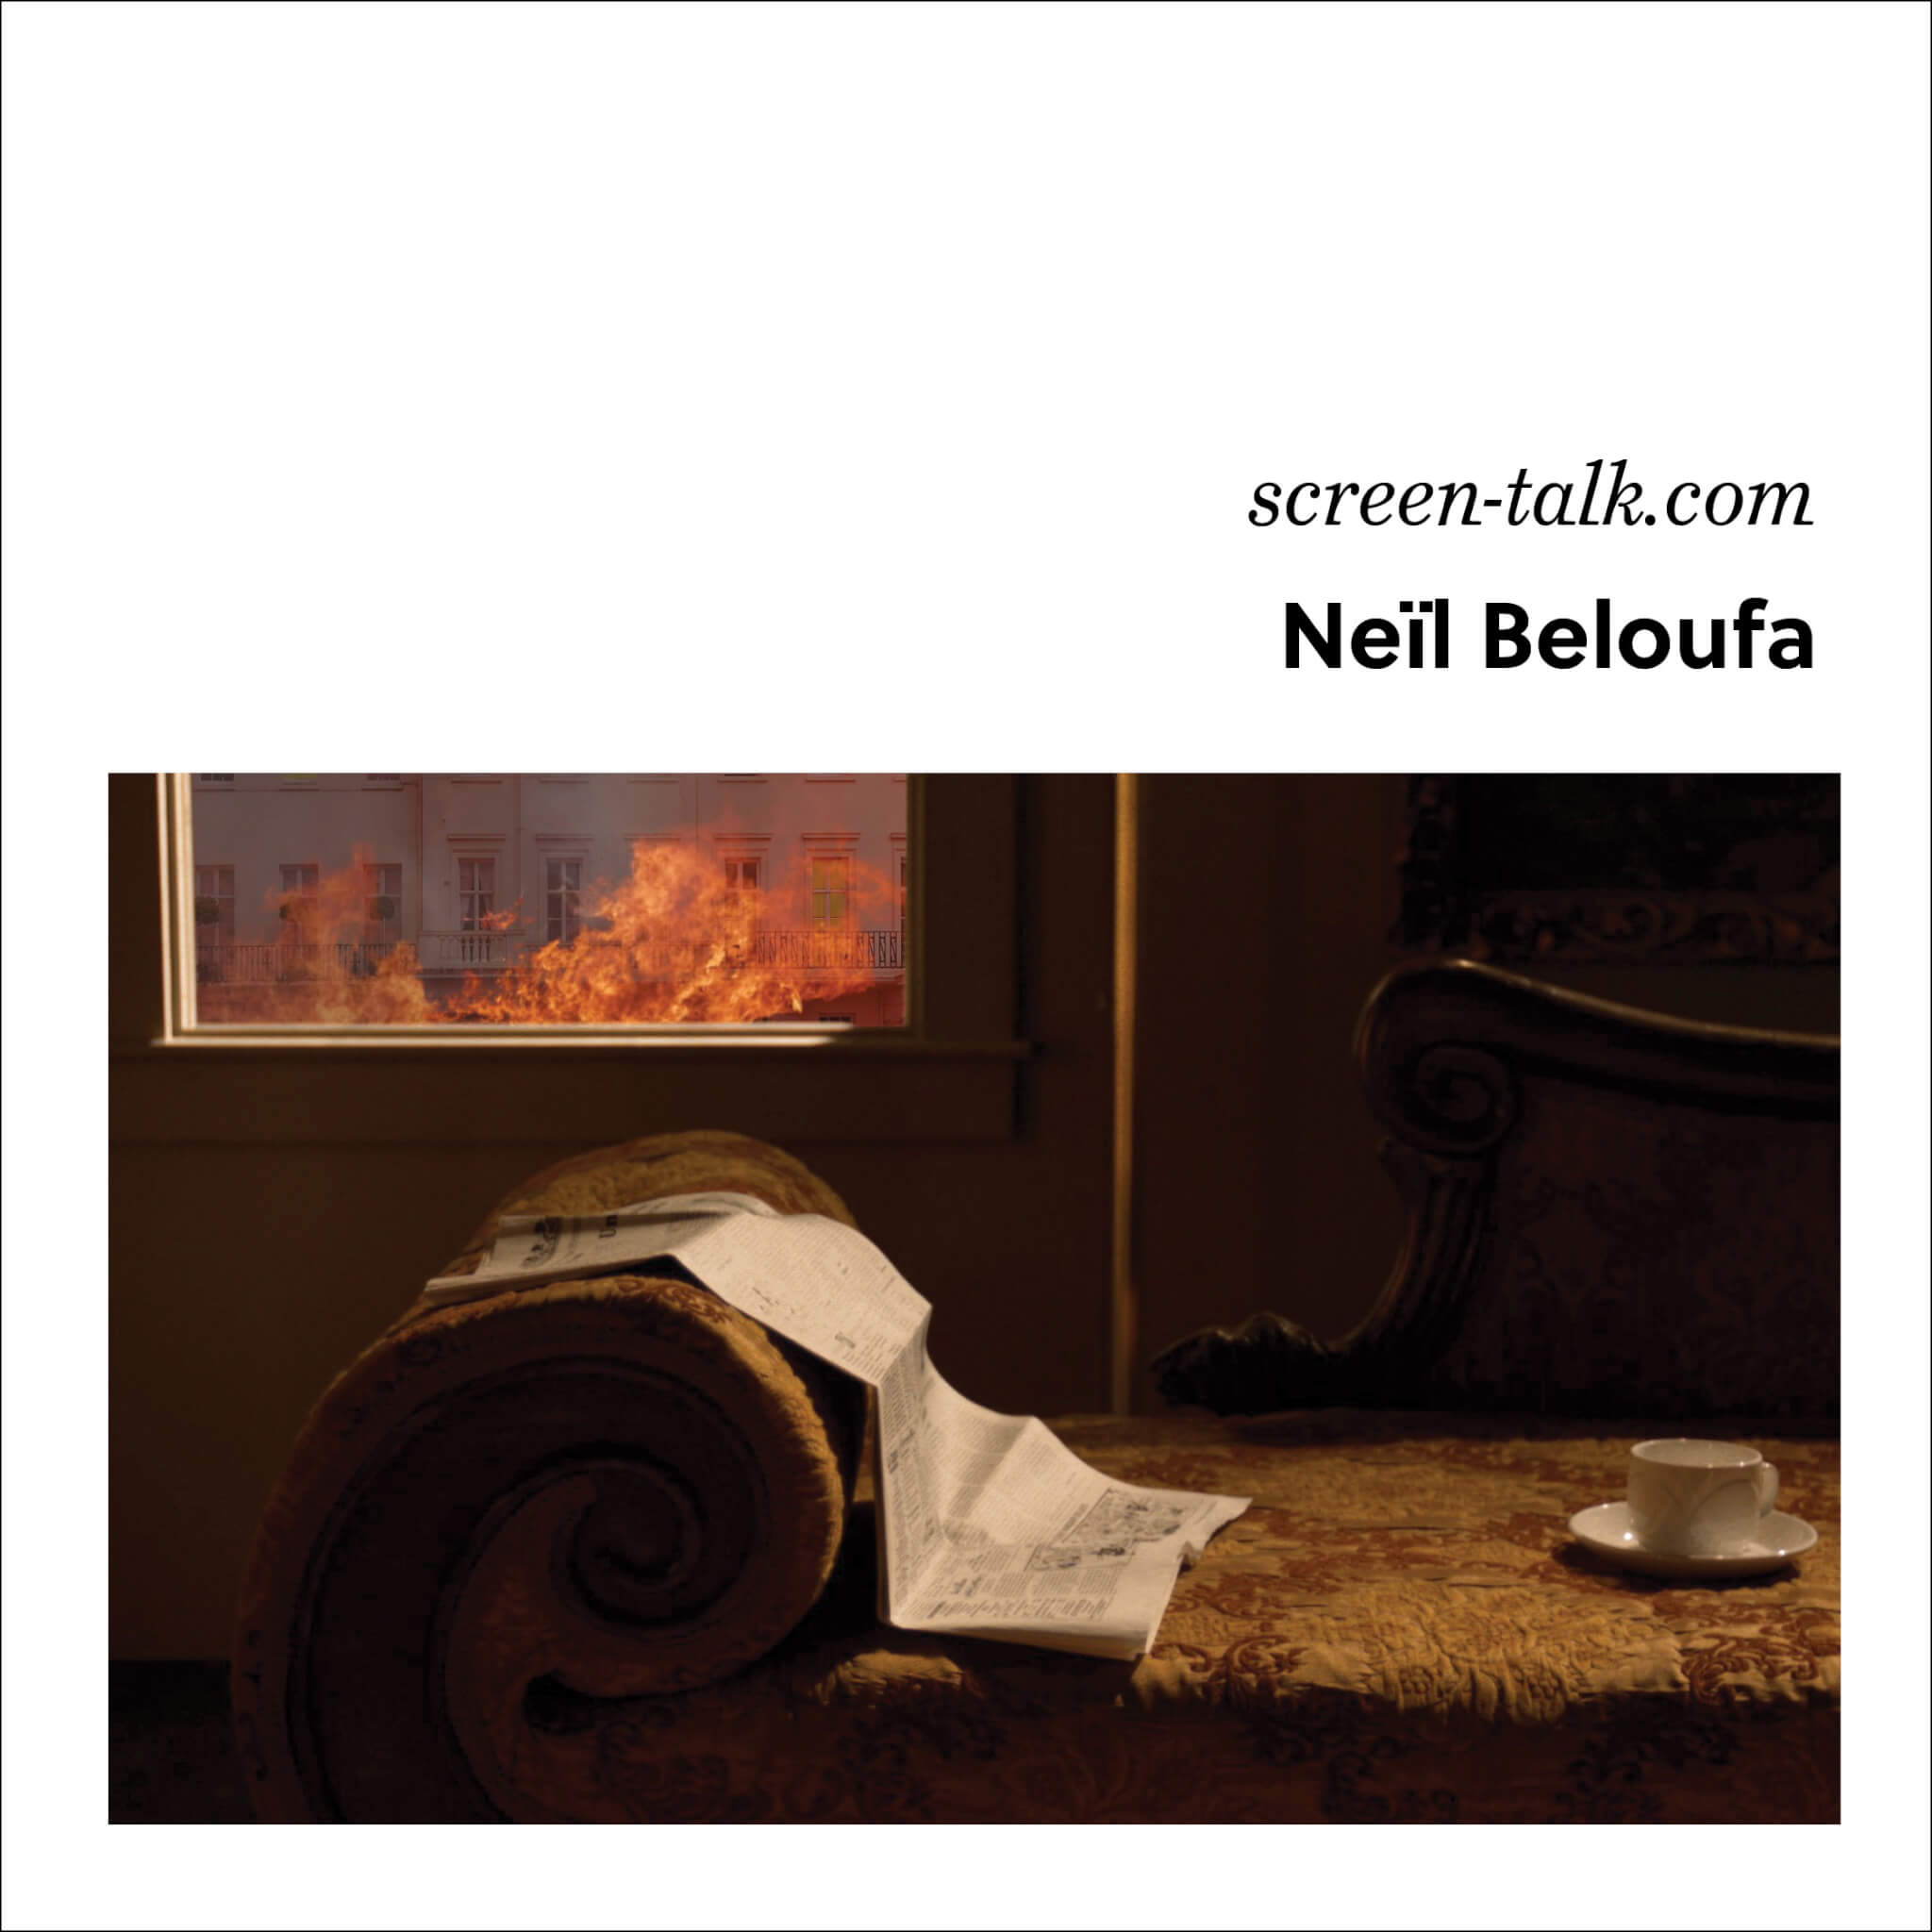 Week 3: Neil Beloufa